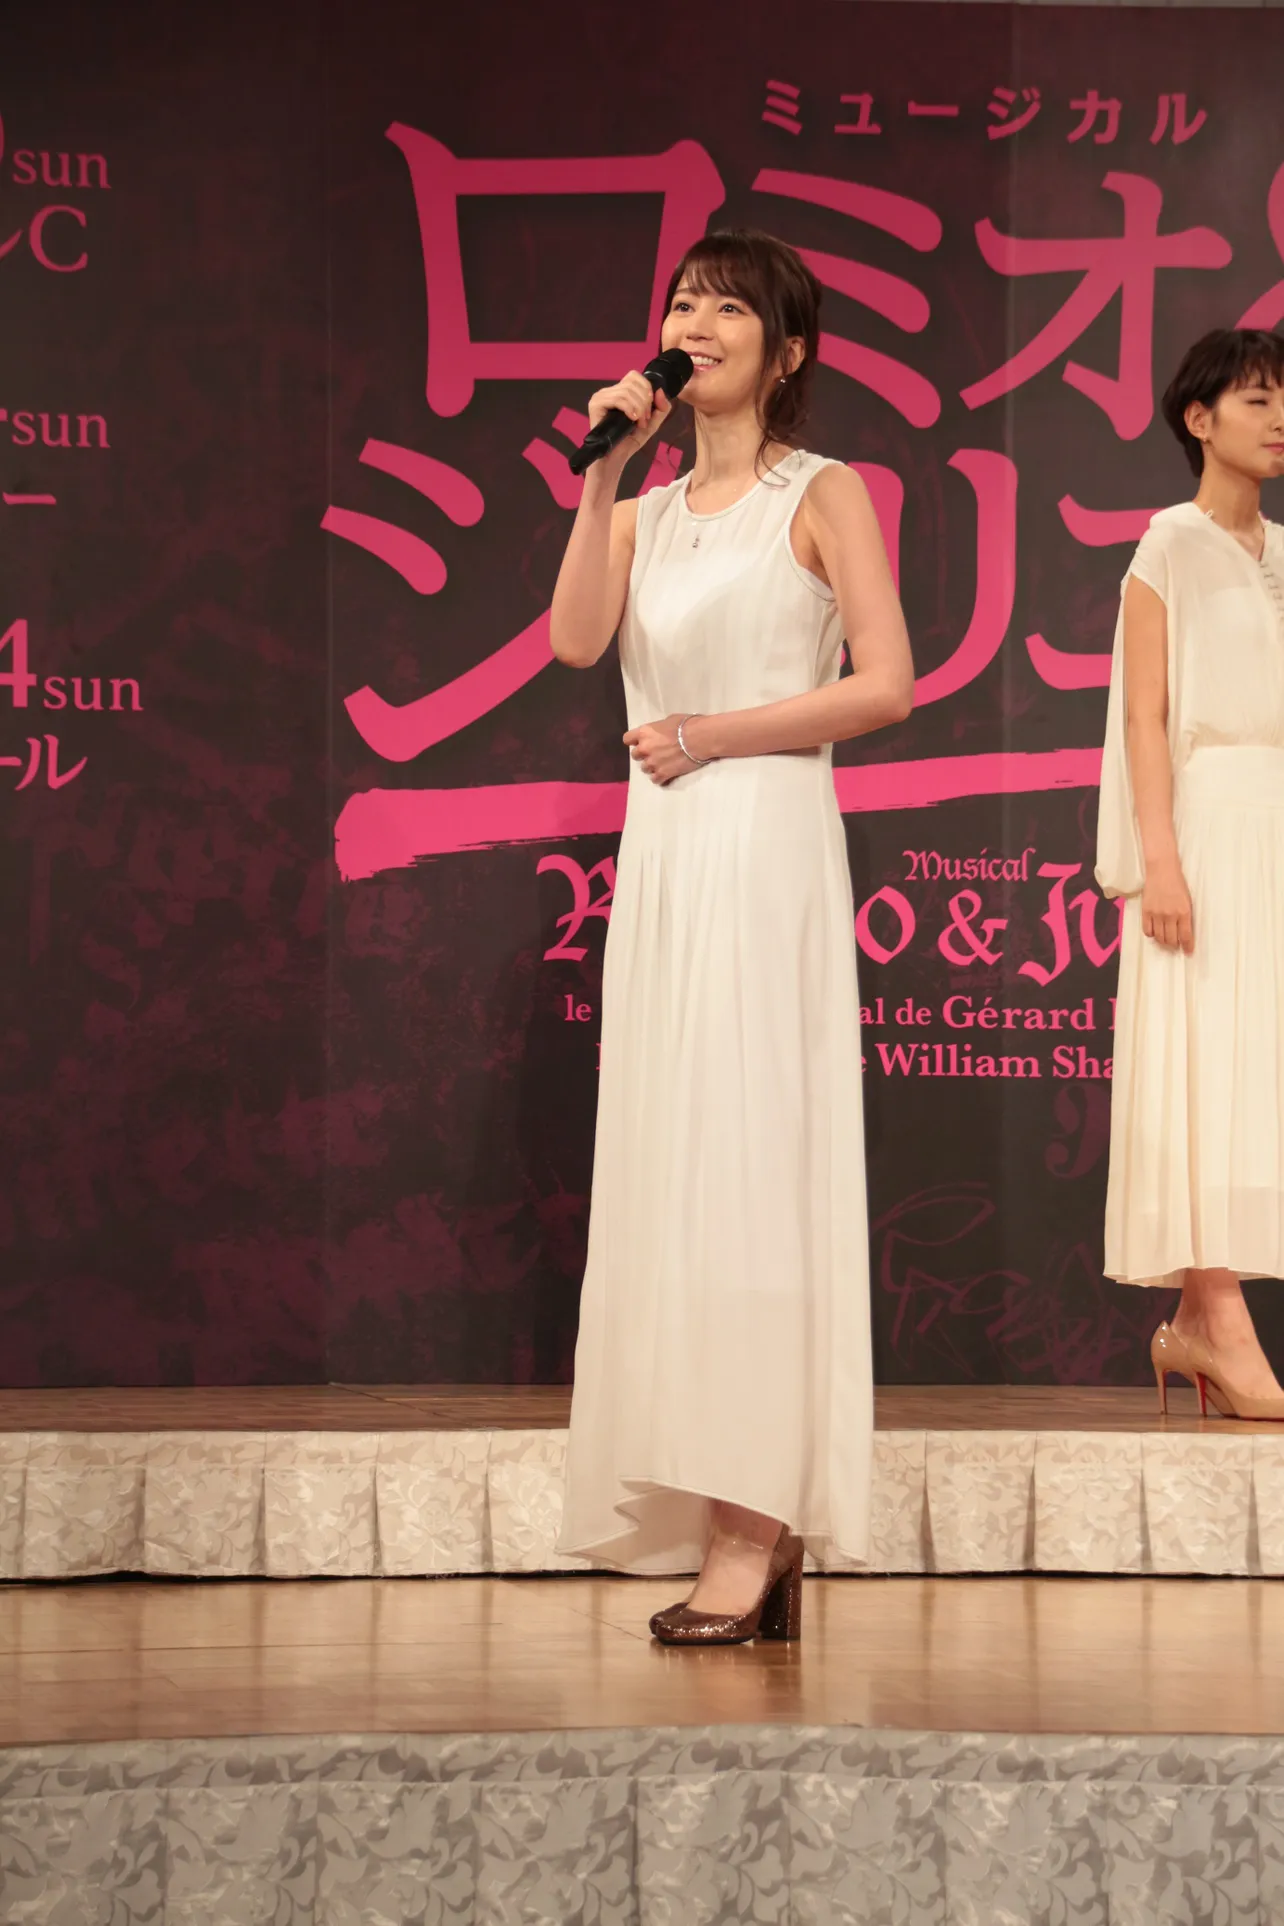 今回は8公演のみの出演となる生田絵梨花は「その短い期間の中でもジュリエットと向き合いたい」と意欲を見せた